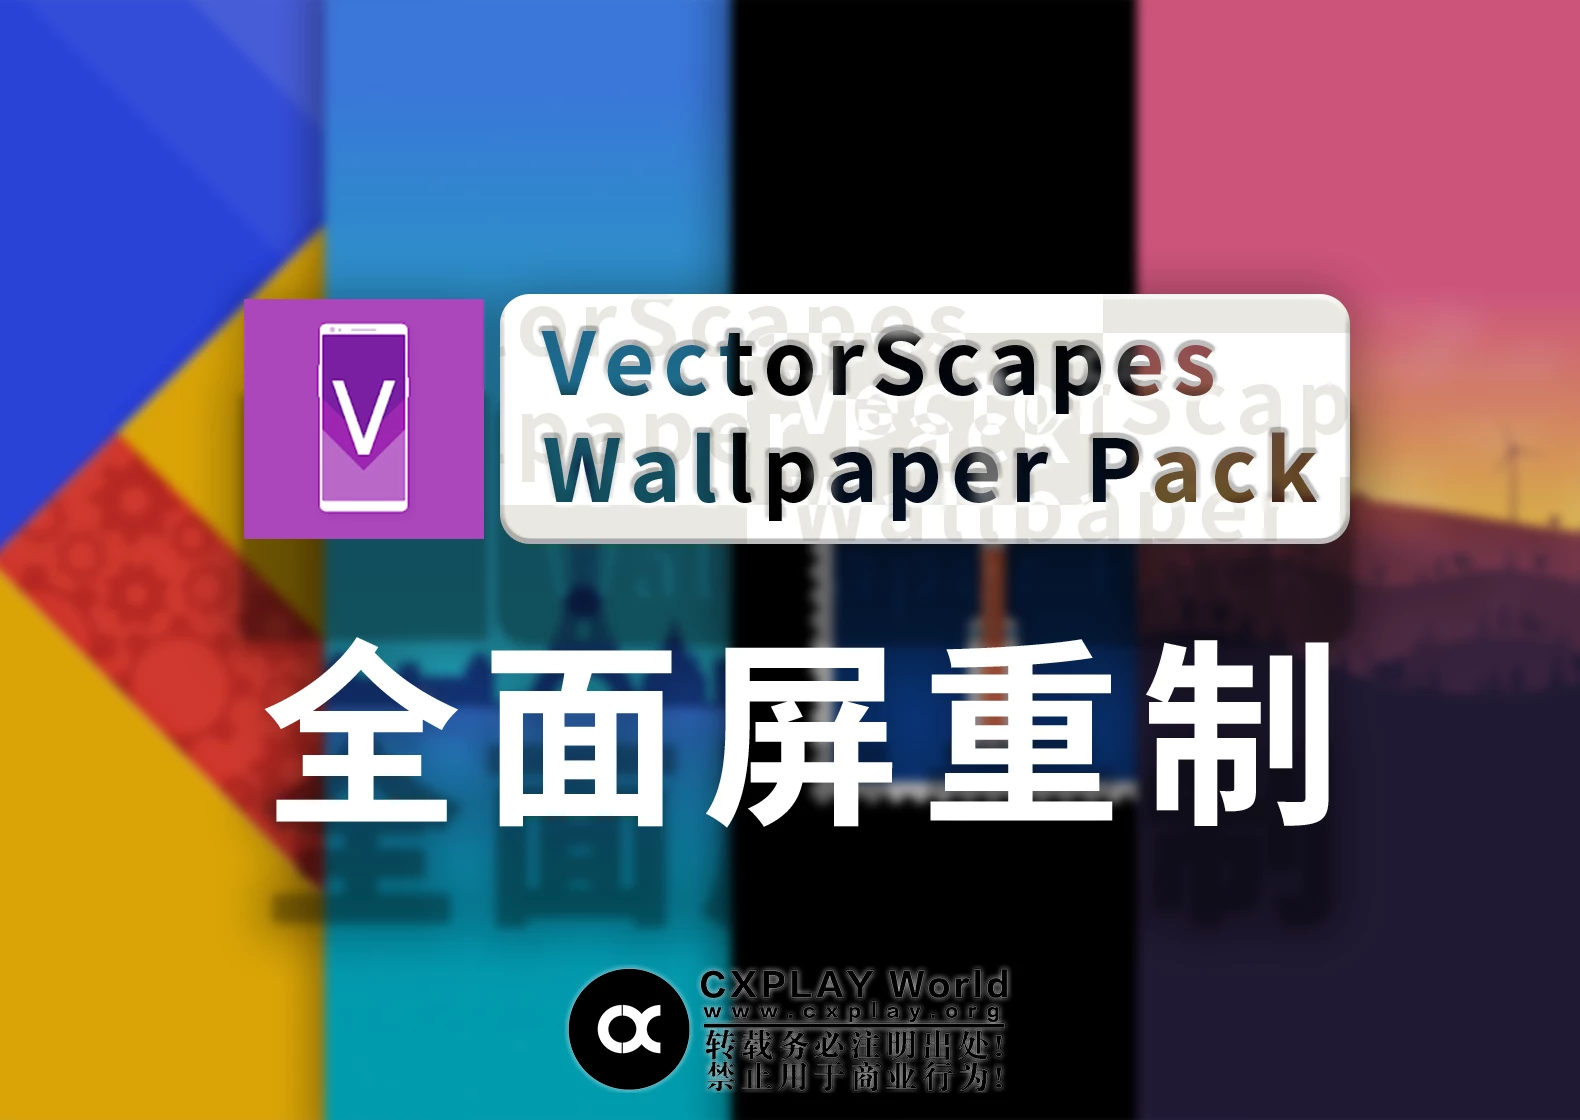 VectorScapes - Wallpaper Pack 全面屏重制版